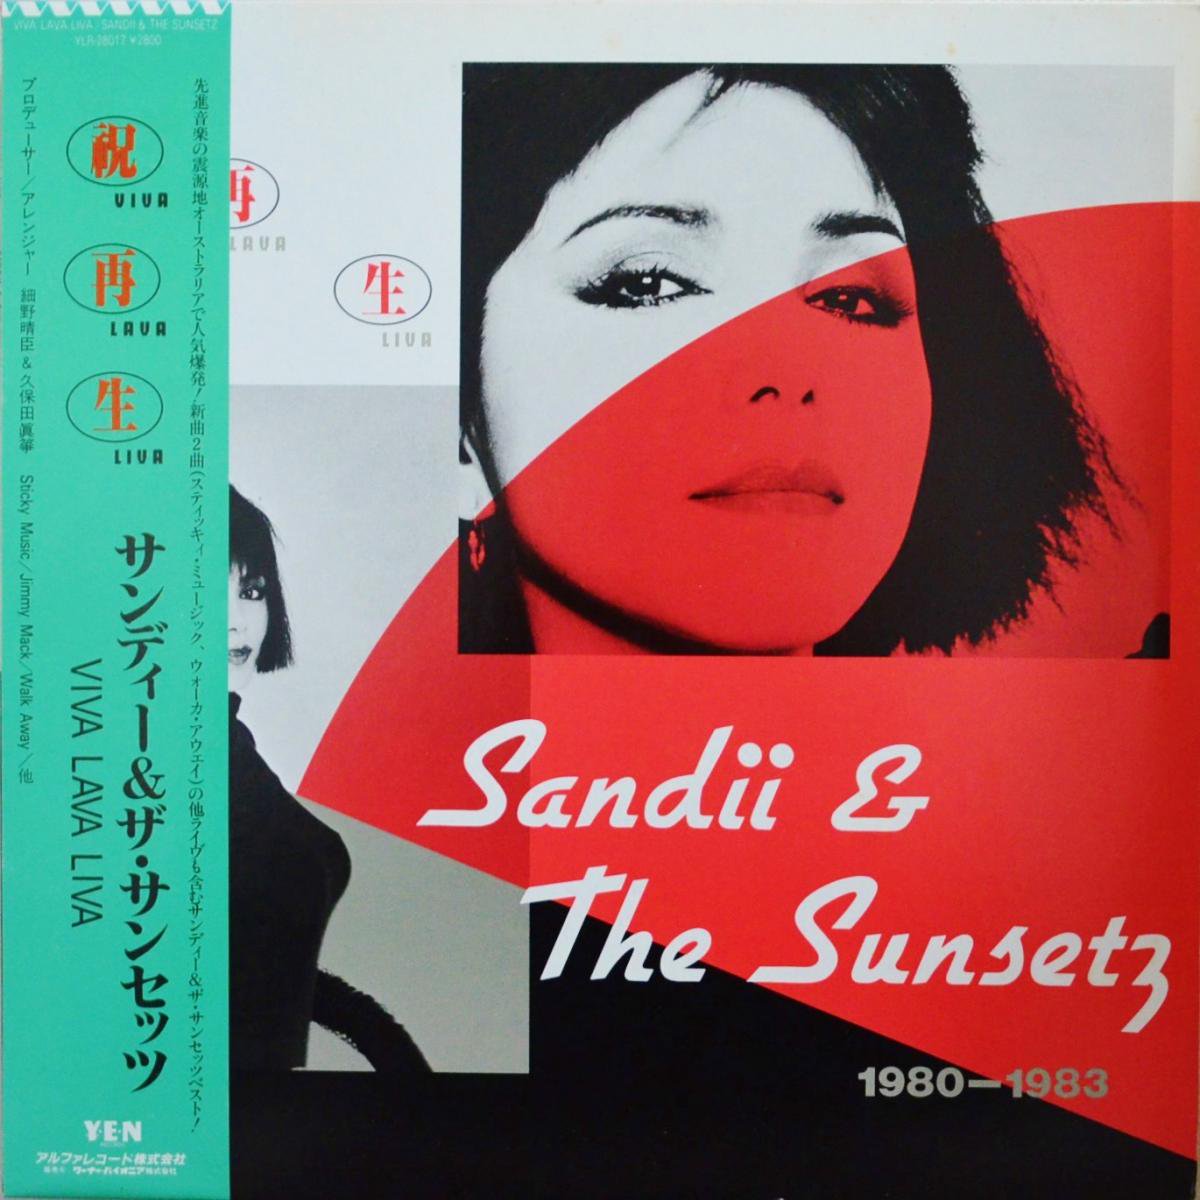 サンディー&ザ・サンセッツ SANDII & THE SUNSETZ / 祝再生 VIVA LAVA LIVA 1980 - 1983 (LP)